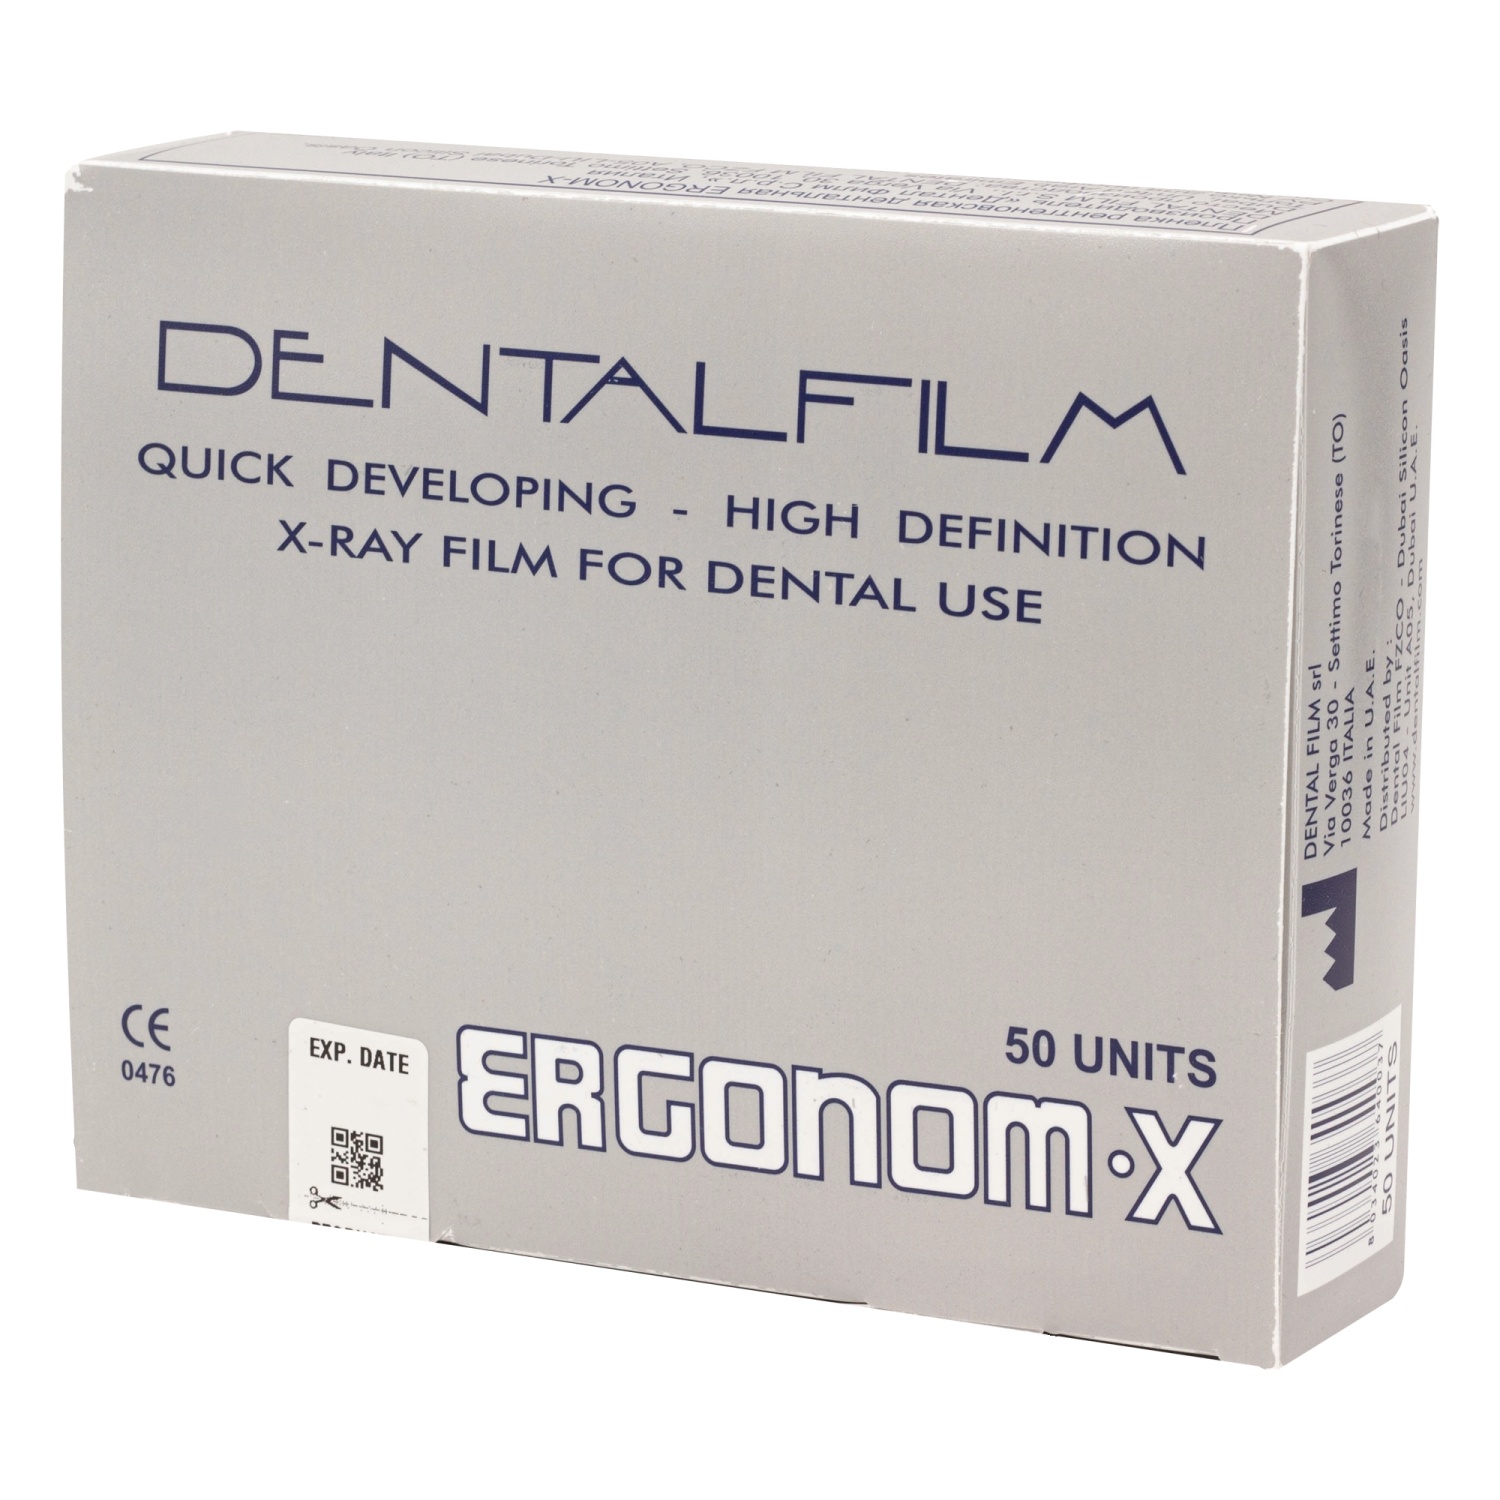 Пленка рентгеновская дентальная самопроявляющаяся ERGONOM-X ЭРГОНОМ-ИКС (50шт) Dentafilm